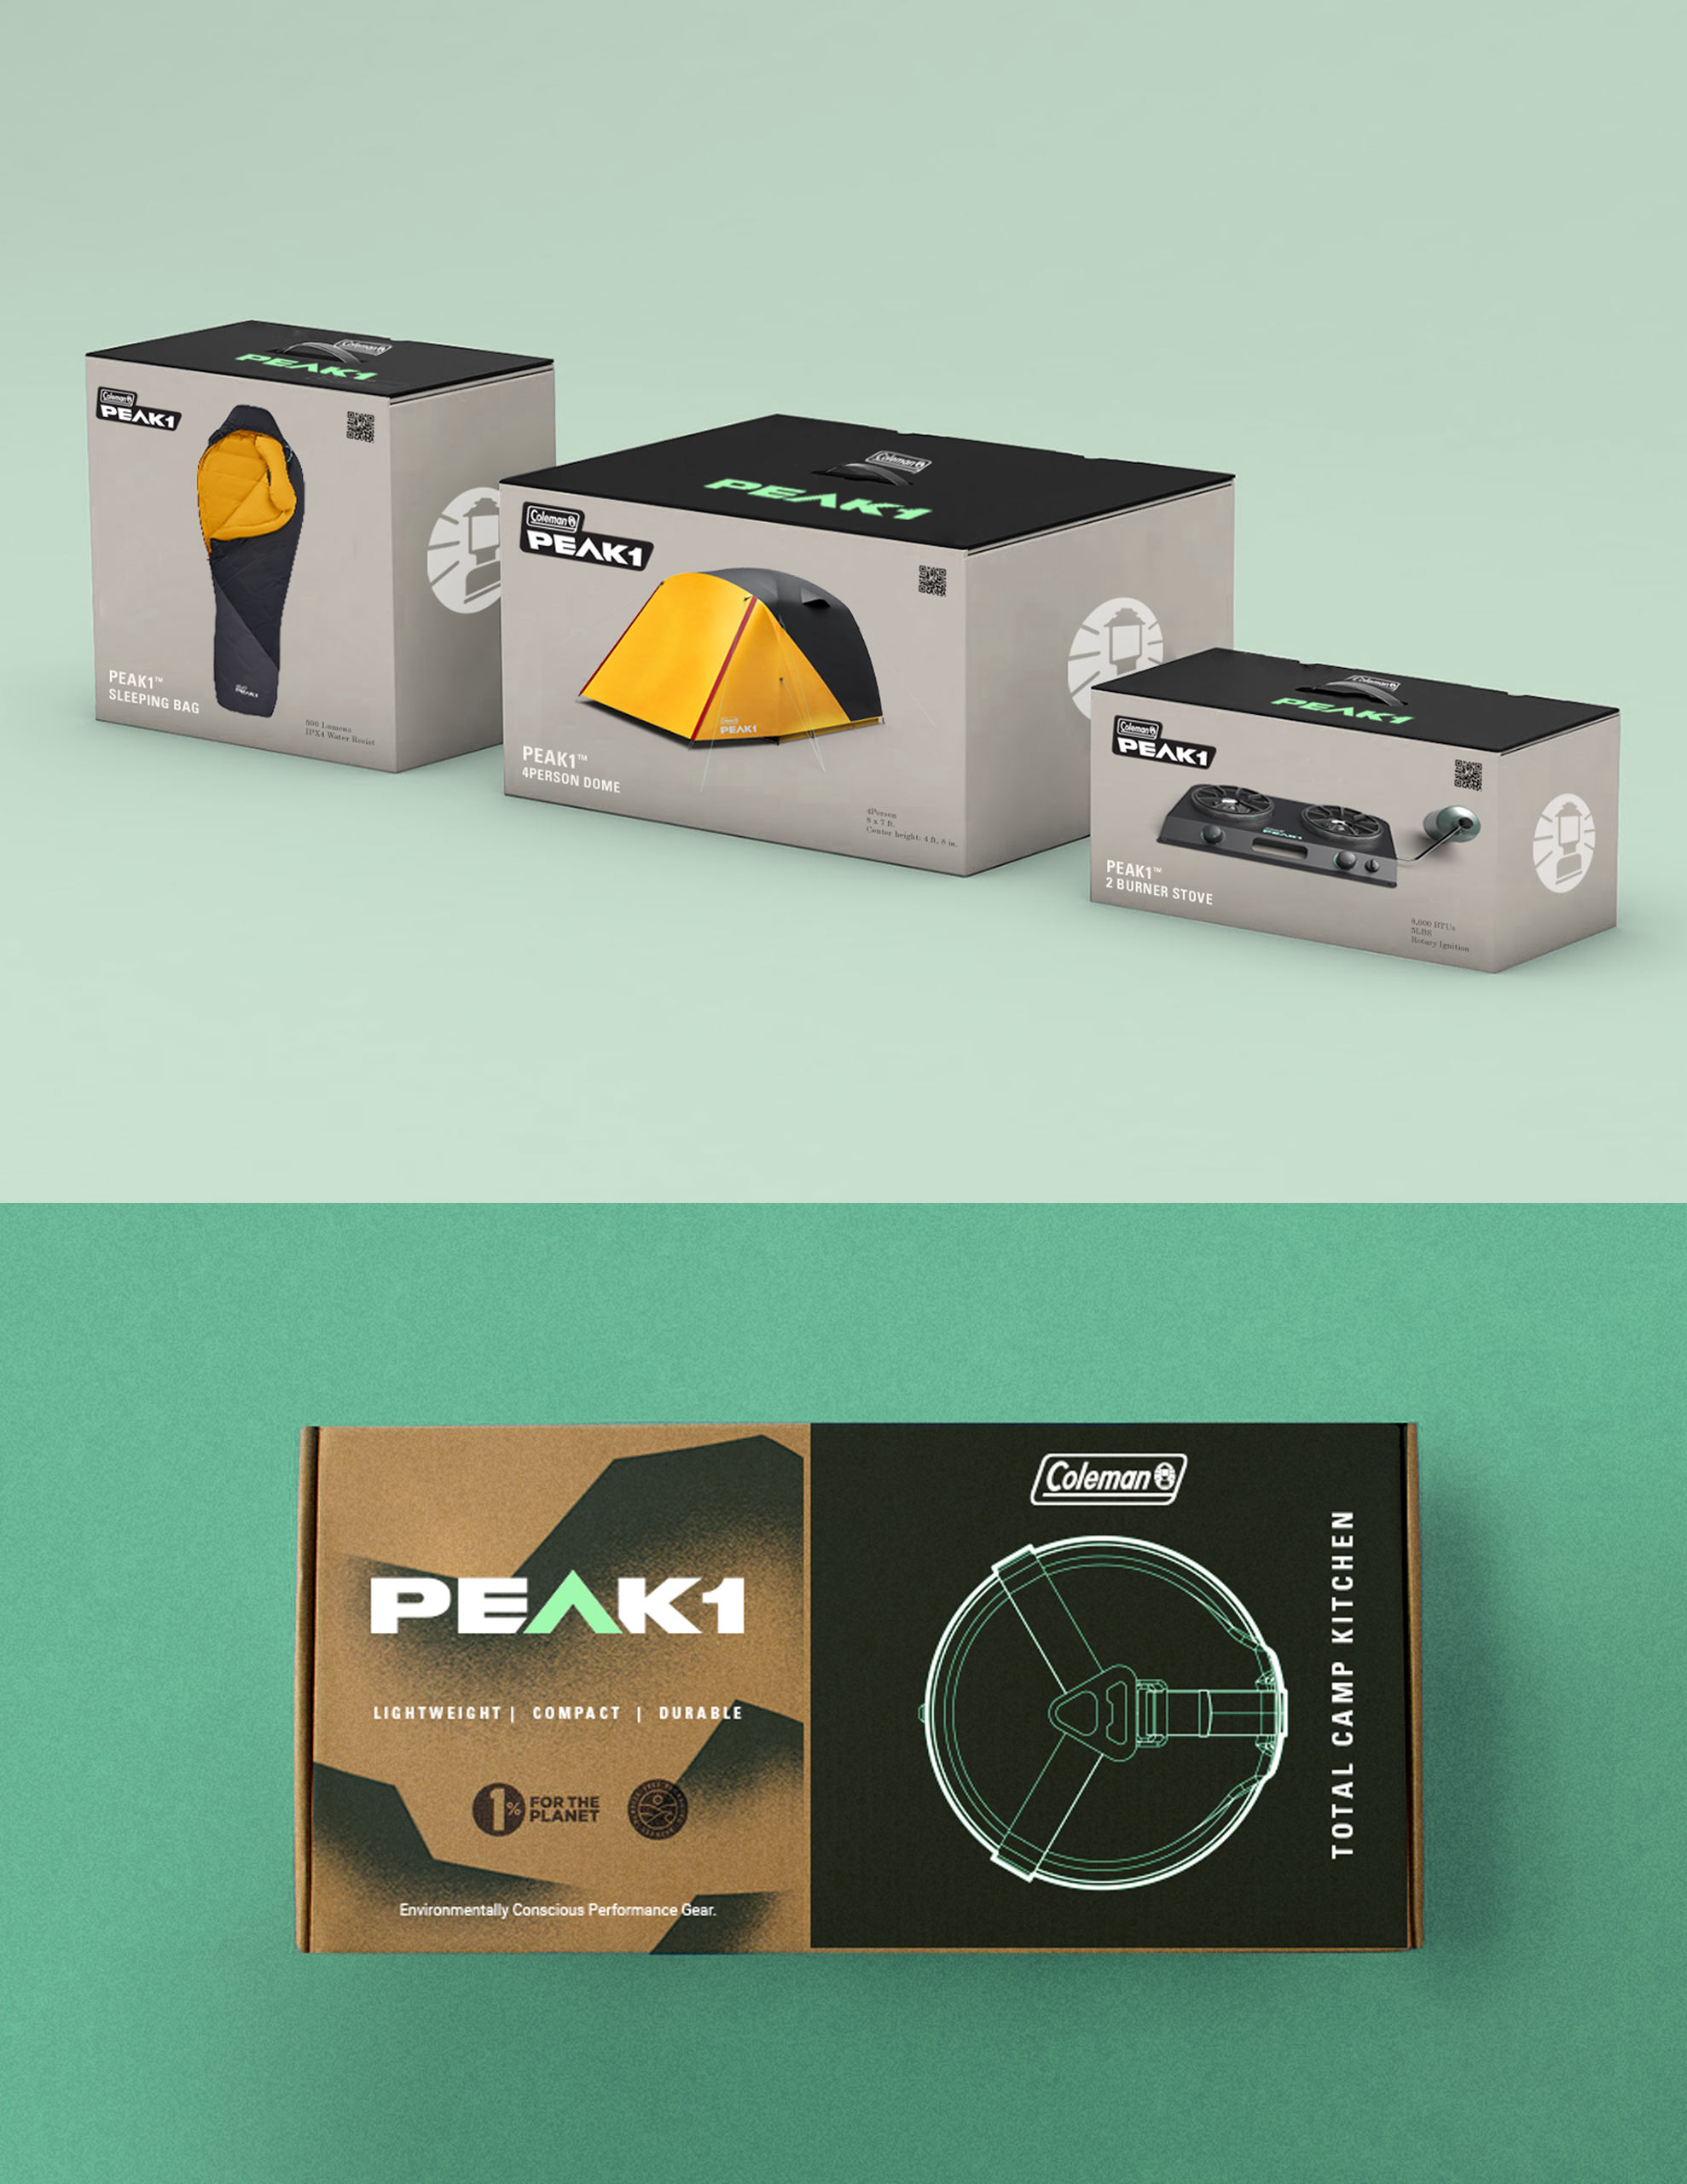 Peak1_Packaging_Concept_5050_Split_Template